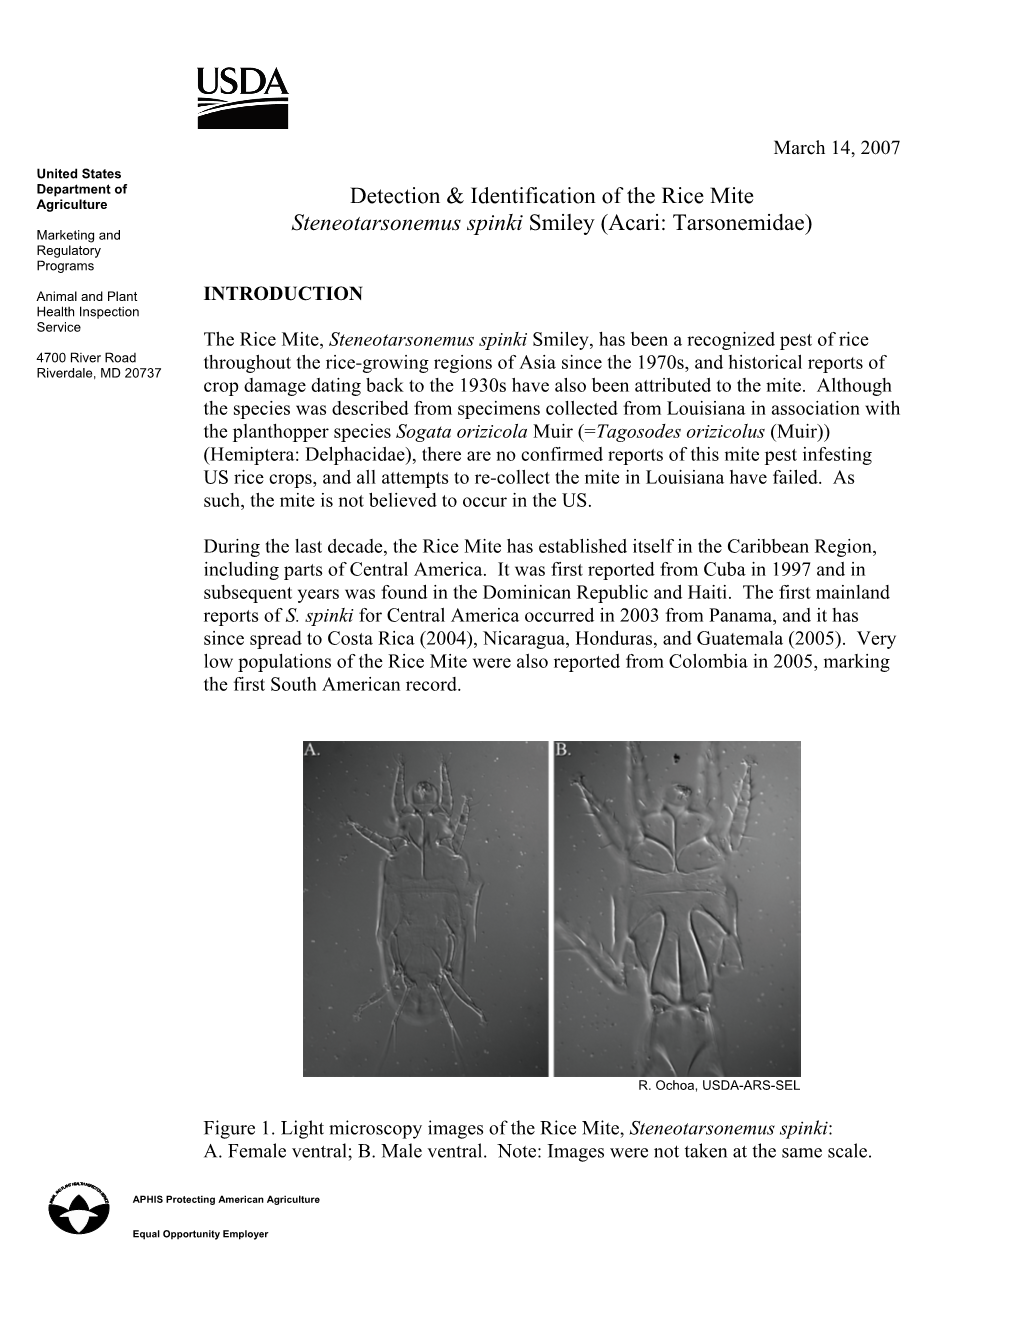 Detection & Identification of the Rice Mite Steneotarsonemus Spinki Smiley